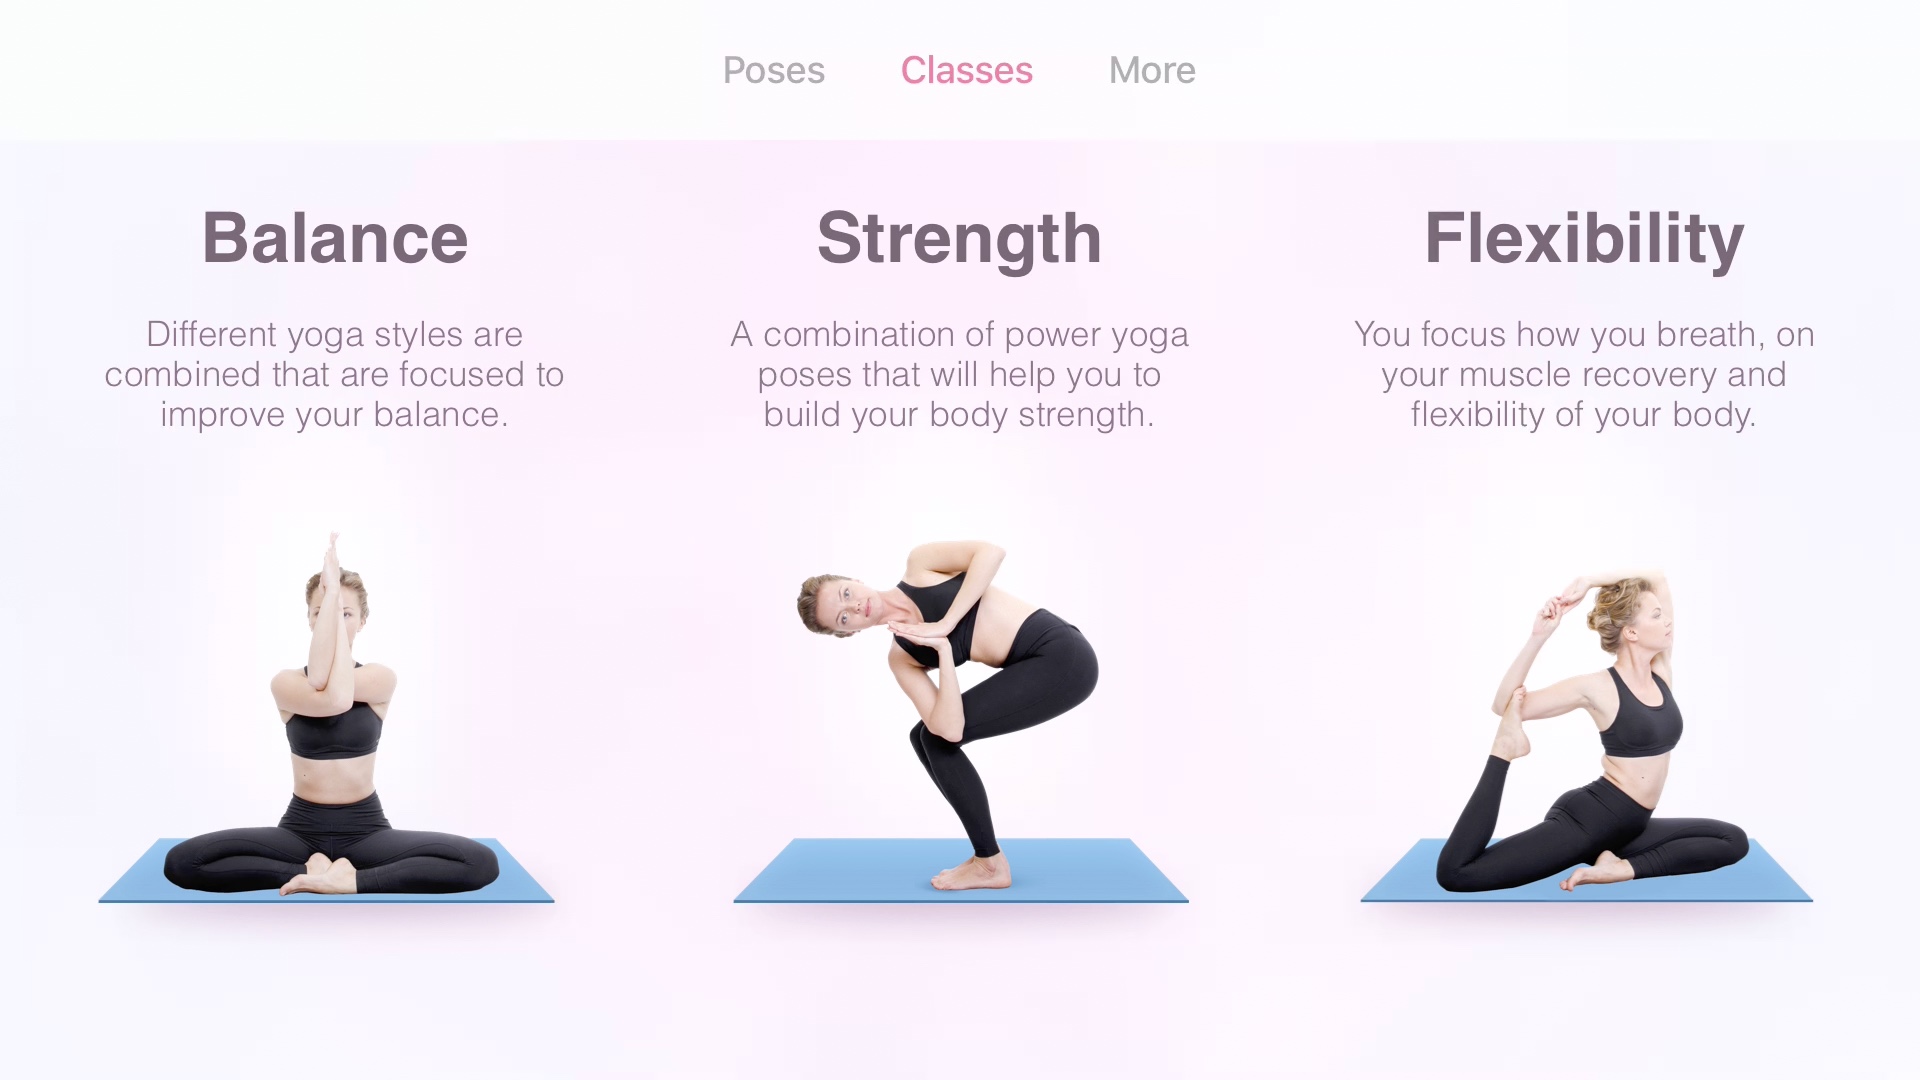 Hot power yoga | Power yoga poses, Yoga poses for beginners, Beginner yoga  poses chart